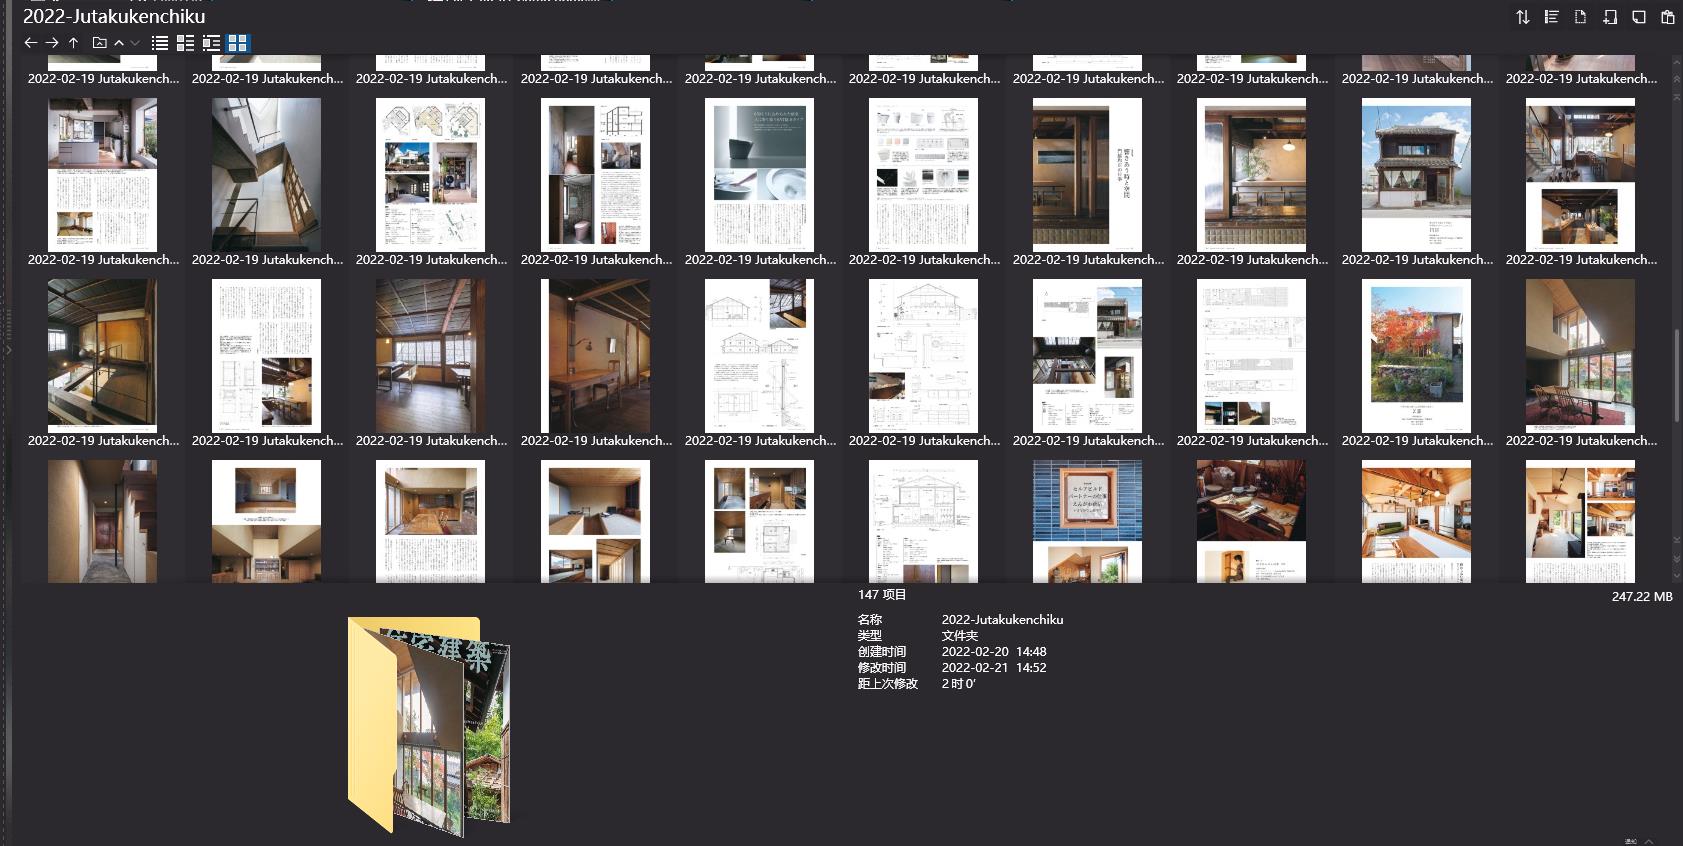 住宅建筑设计杂志,Jutakukenchiku设计杂志,日本住宅建筑杂志,日本设计杂志,杂志下载,Jutakukenchiku杂志合集